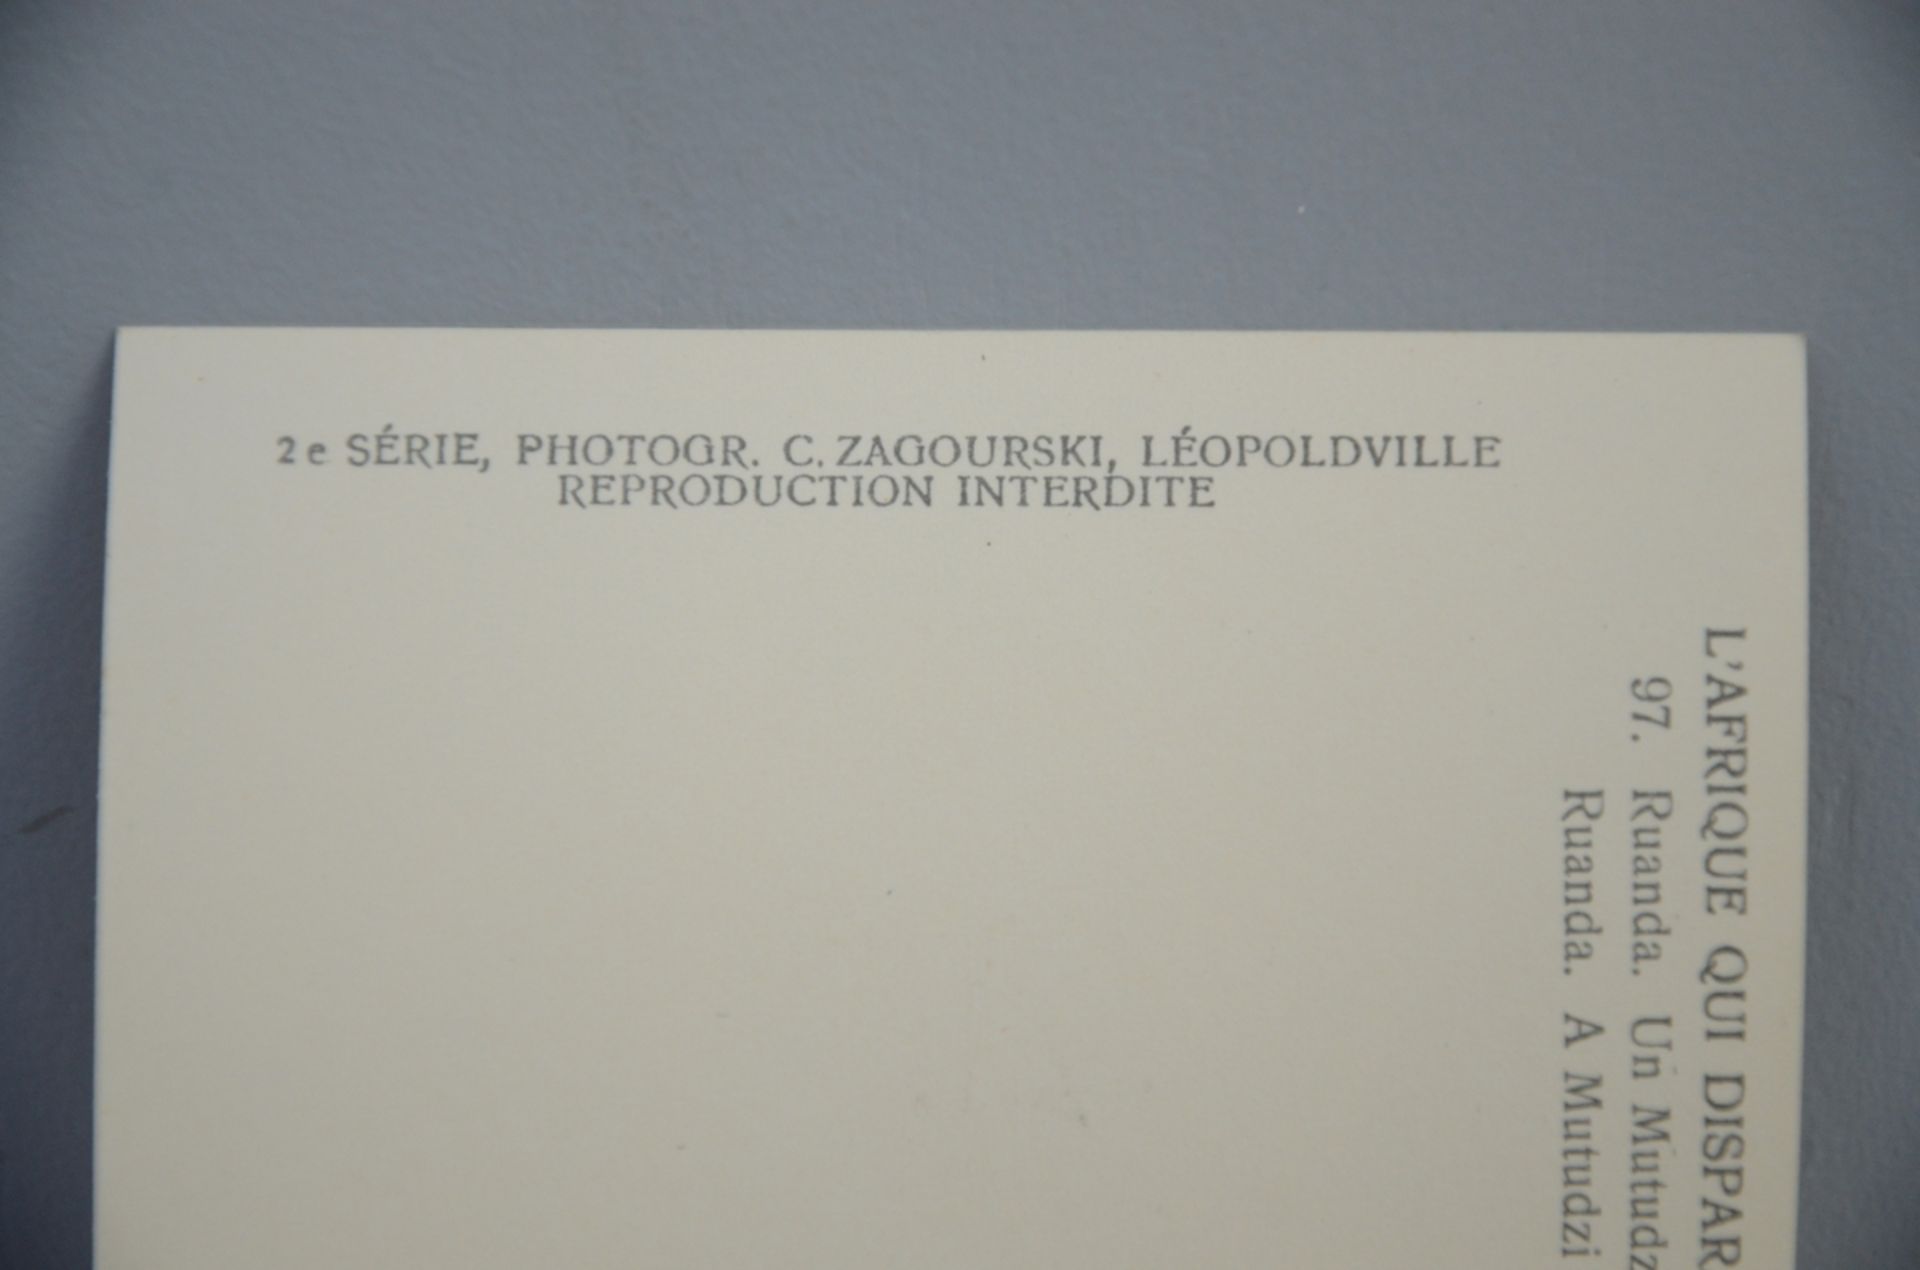 Collection of 198 postcards by C. Zagourski - Leopoldville (2iËme sÈrie) 'l'Afrique qui disparait' - Image 4 of 6